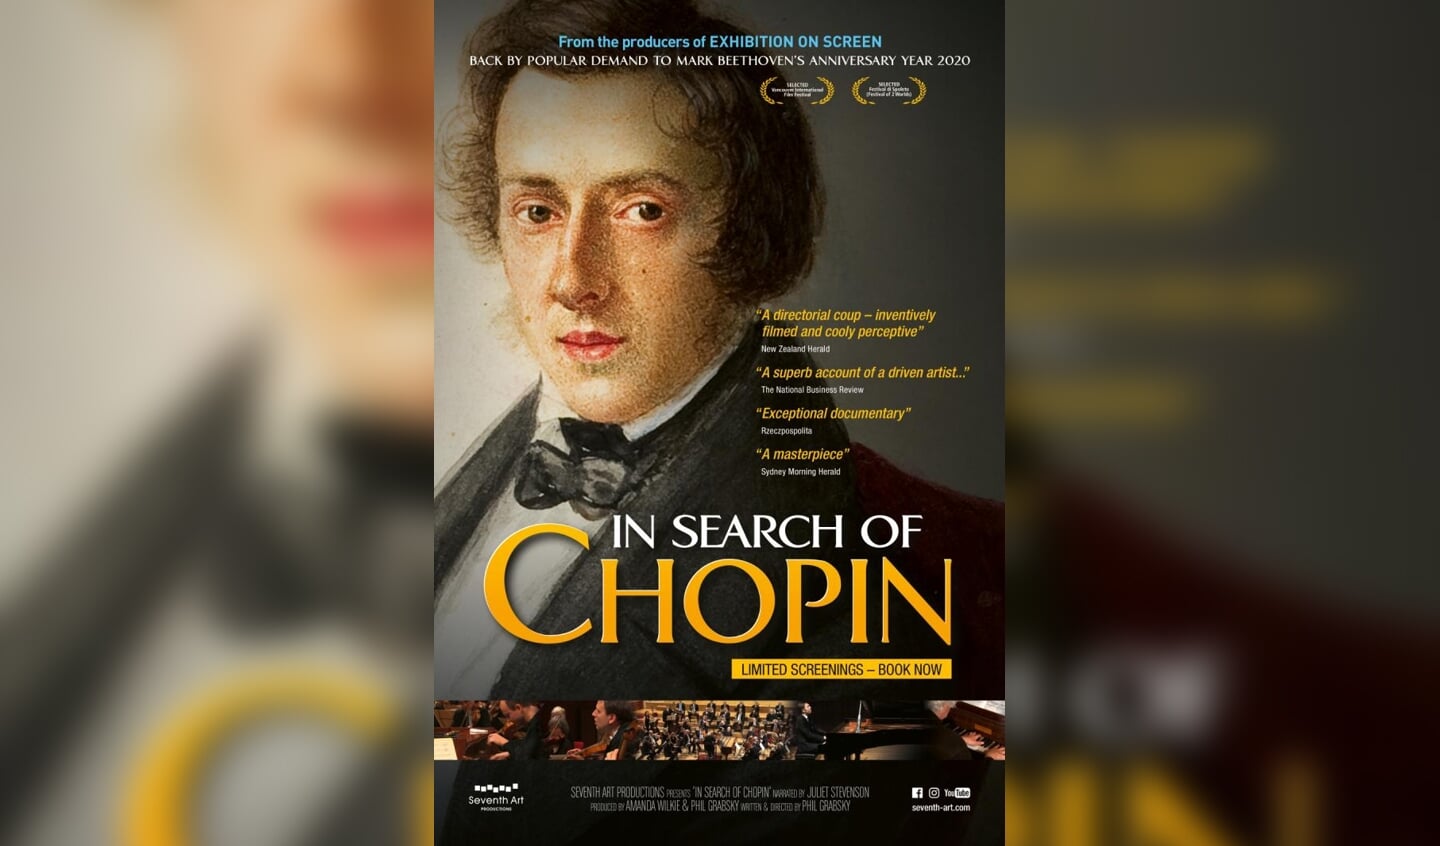 Chopin in Cinema Enkhuizen